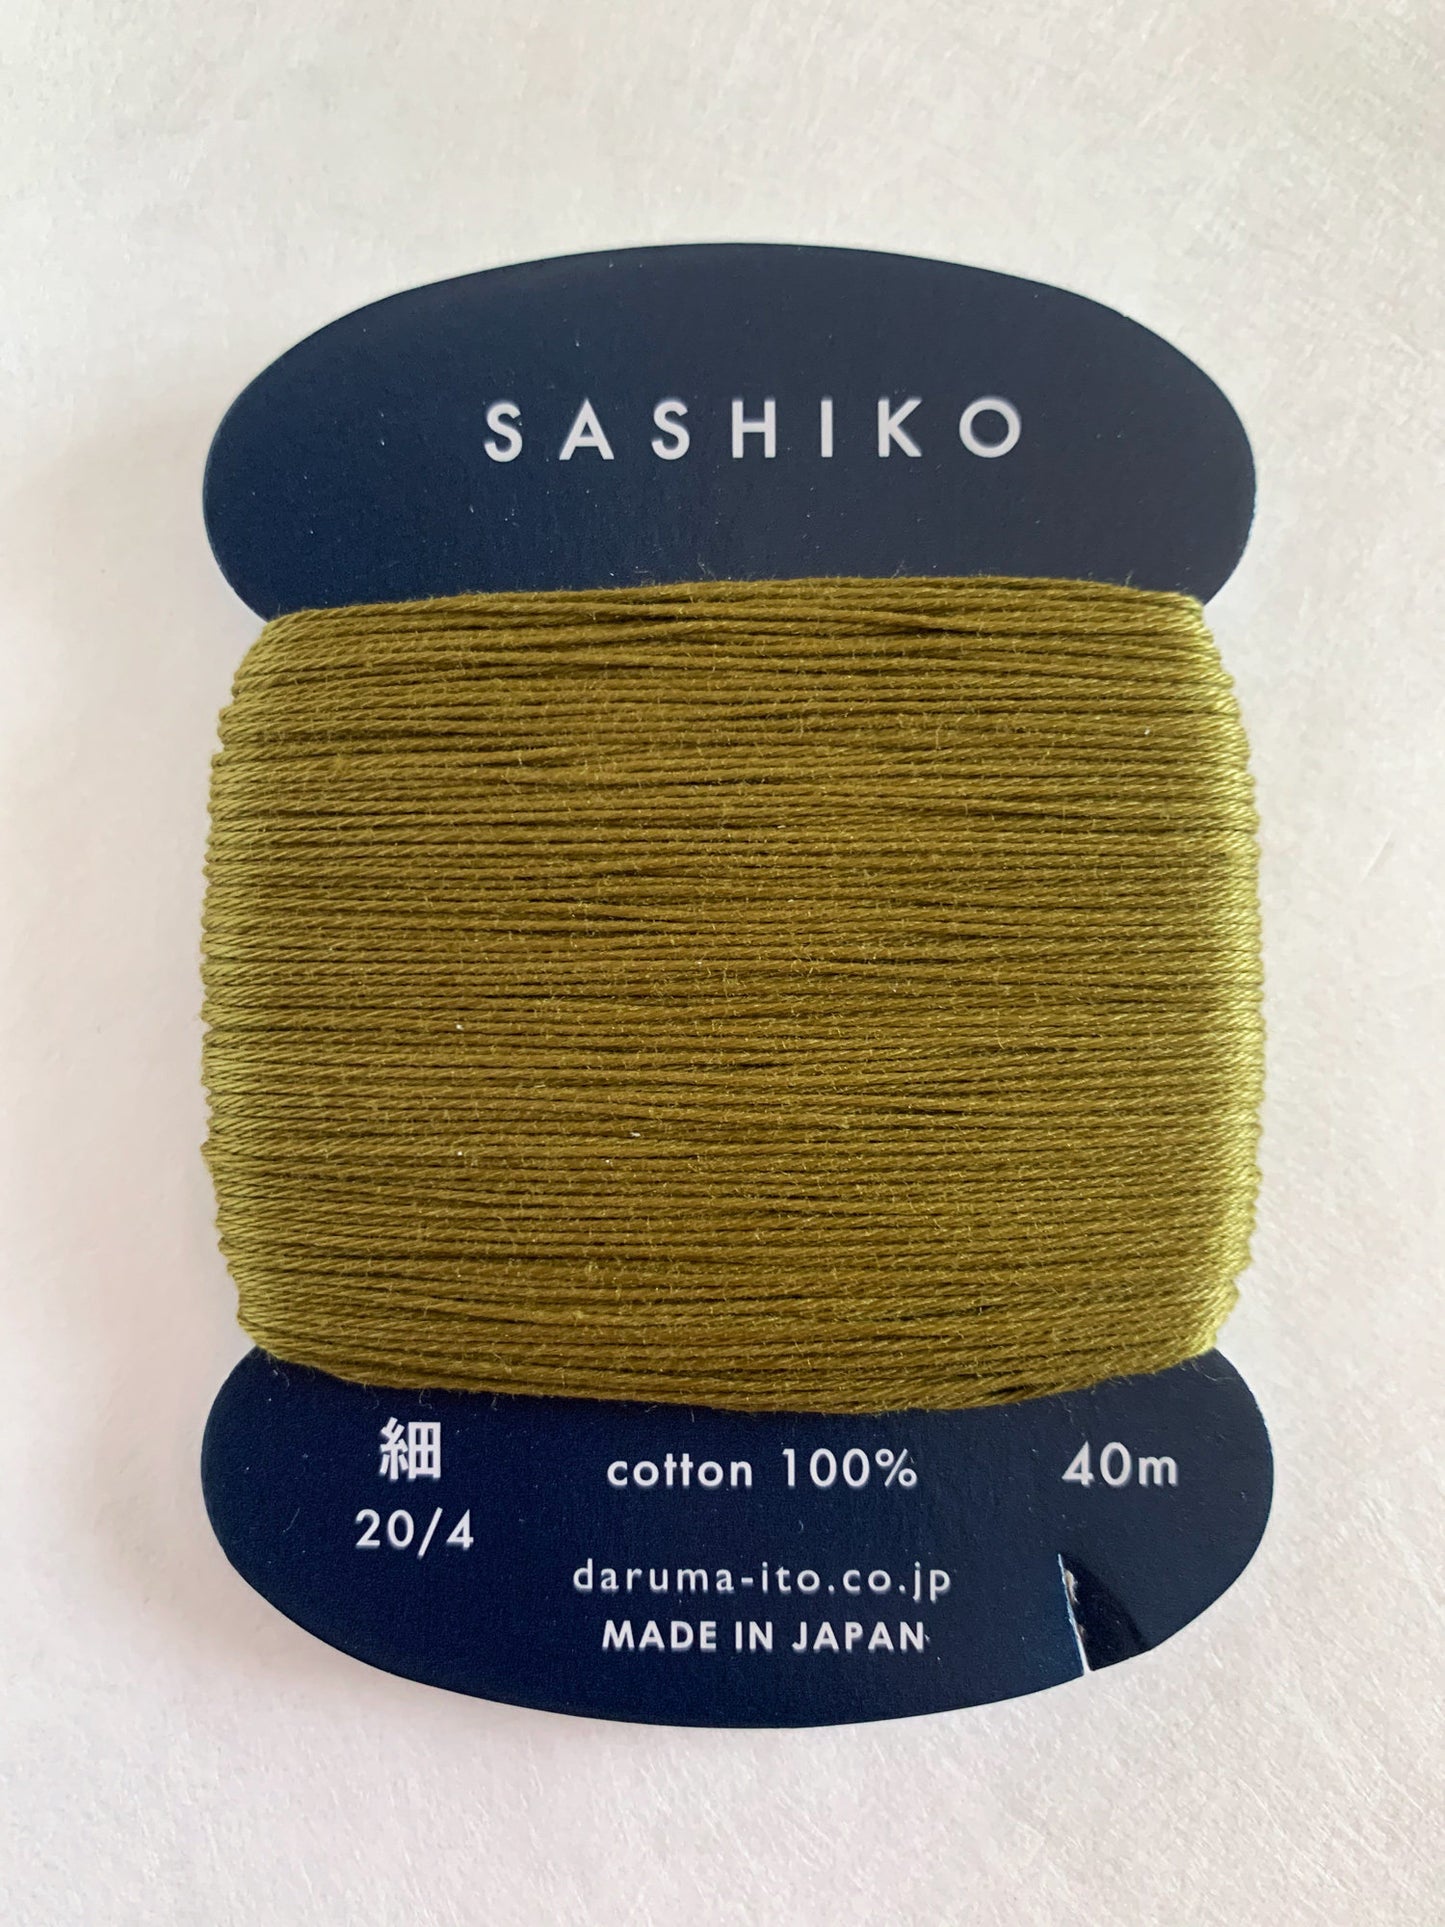 Daruma #228 WARBLER Japanese Cotton SASHIKO thread 40 meter skein 20/4 うぐいす olive